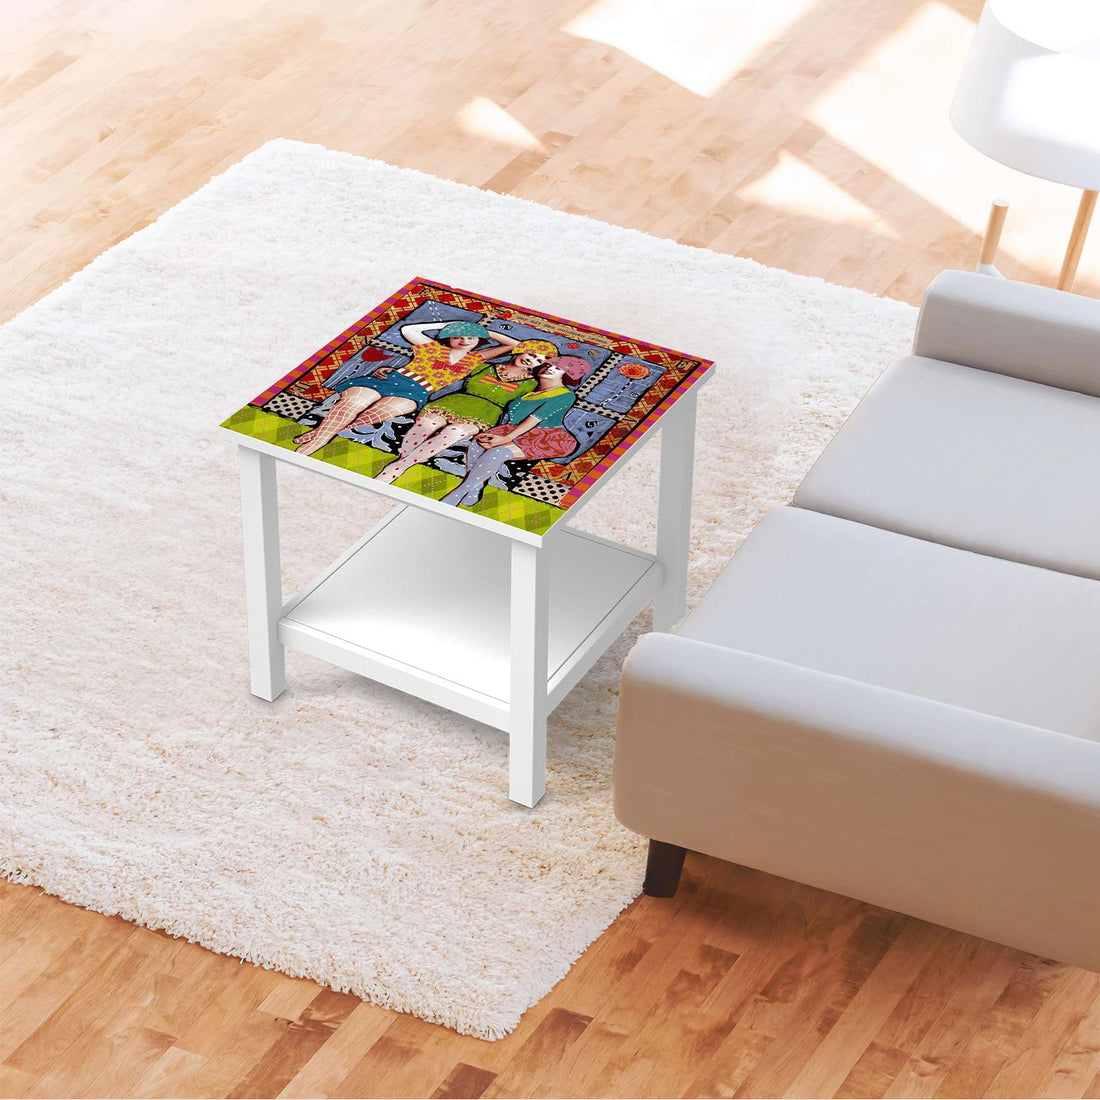 Möbel Klebefolie Her mit dem schönen Leben - IKEA Hemnes Beistelltisch 55x55 cm - Wohnzimmer